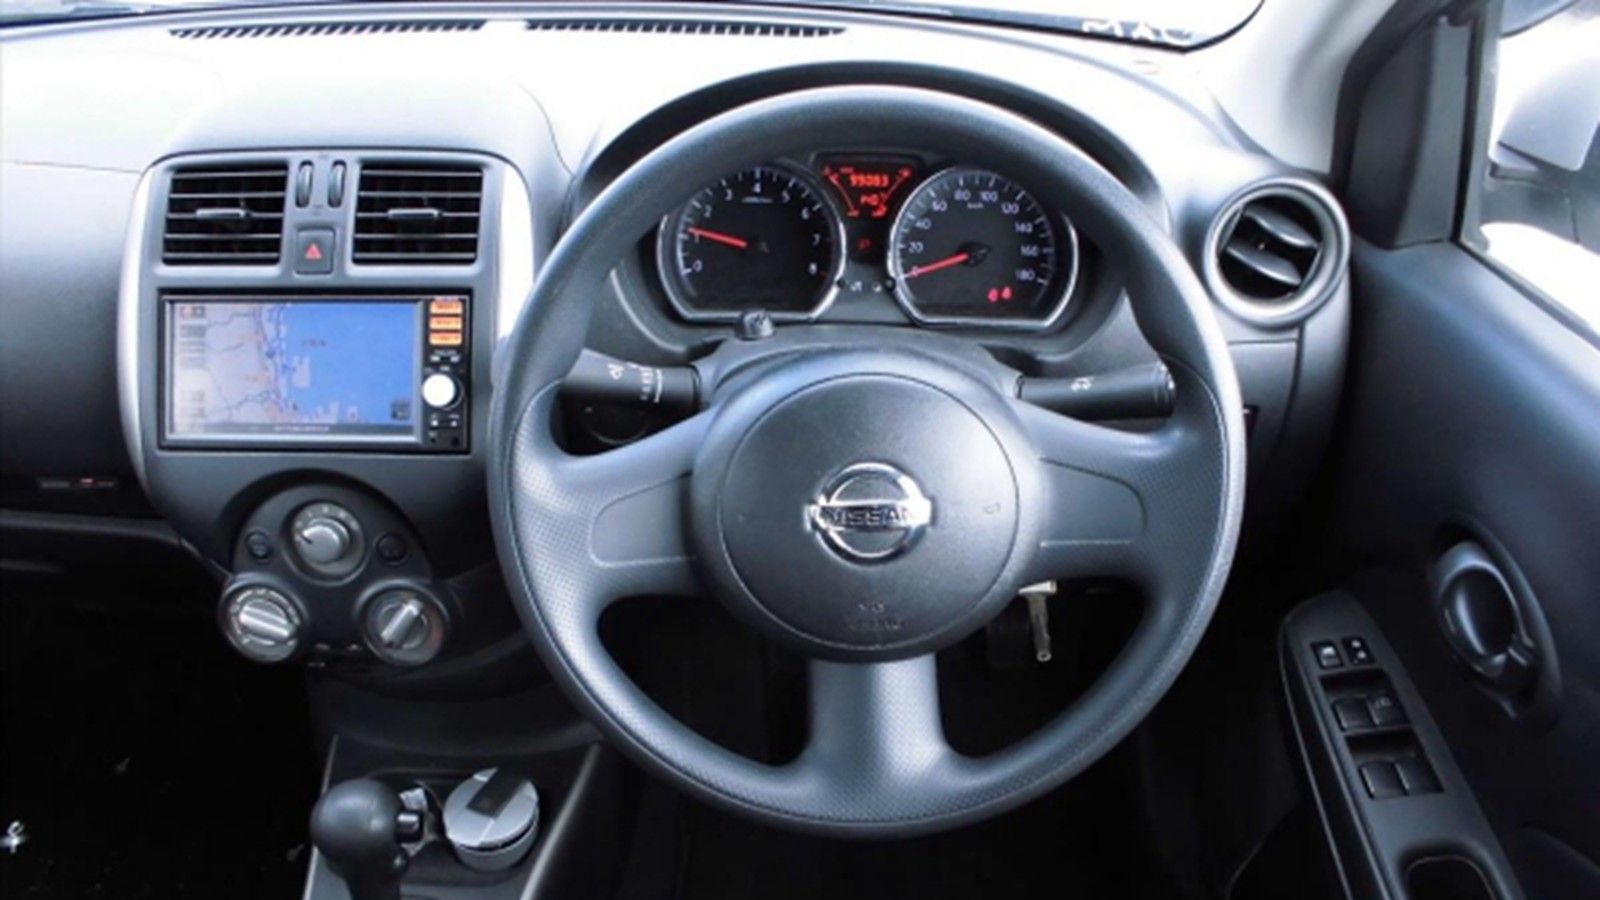 2014 Nissan Latio Hatchback 1.8L Interior 003